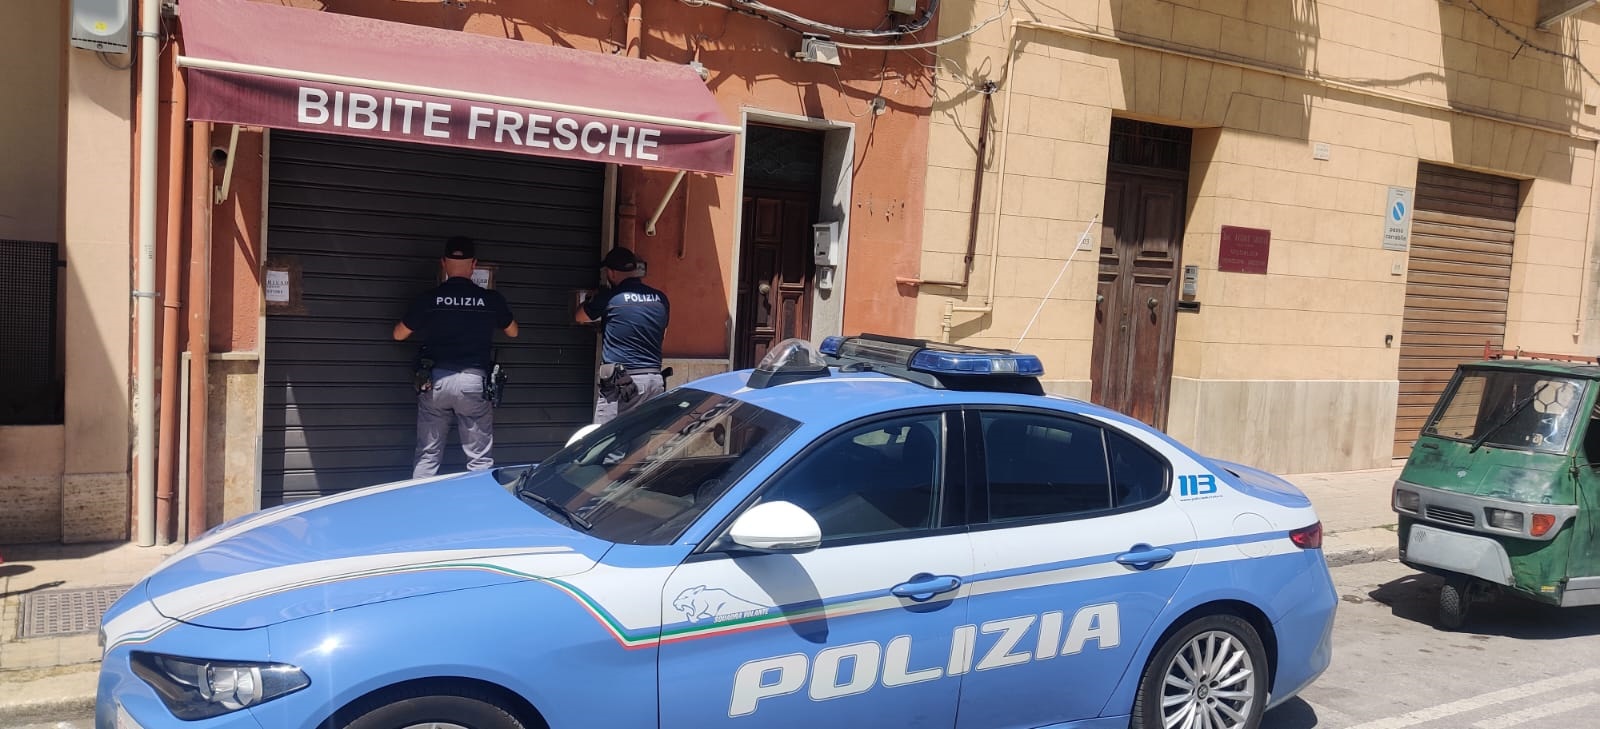 A Trapani la Polizia chiude un locale: è ritrovo di pregiudicati e spacciatori